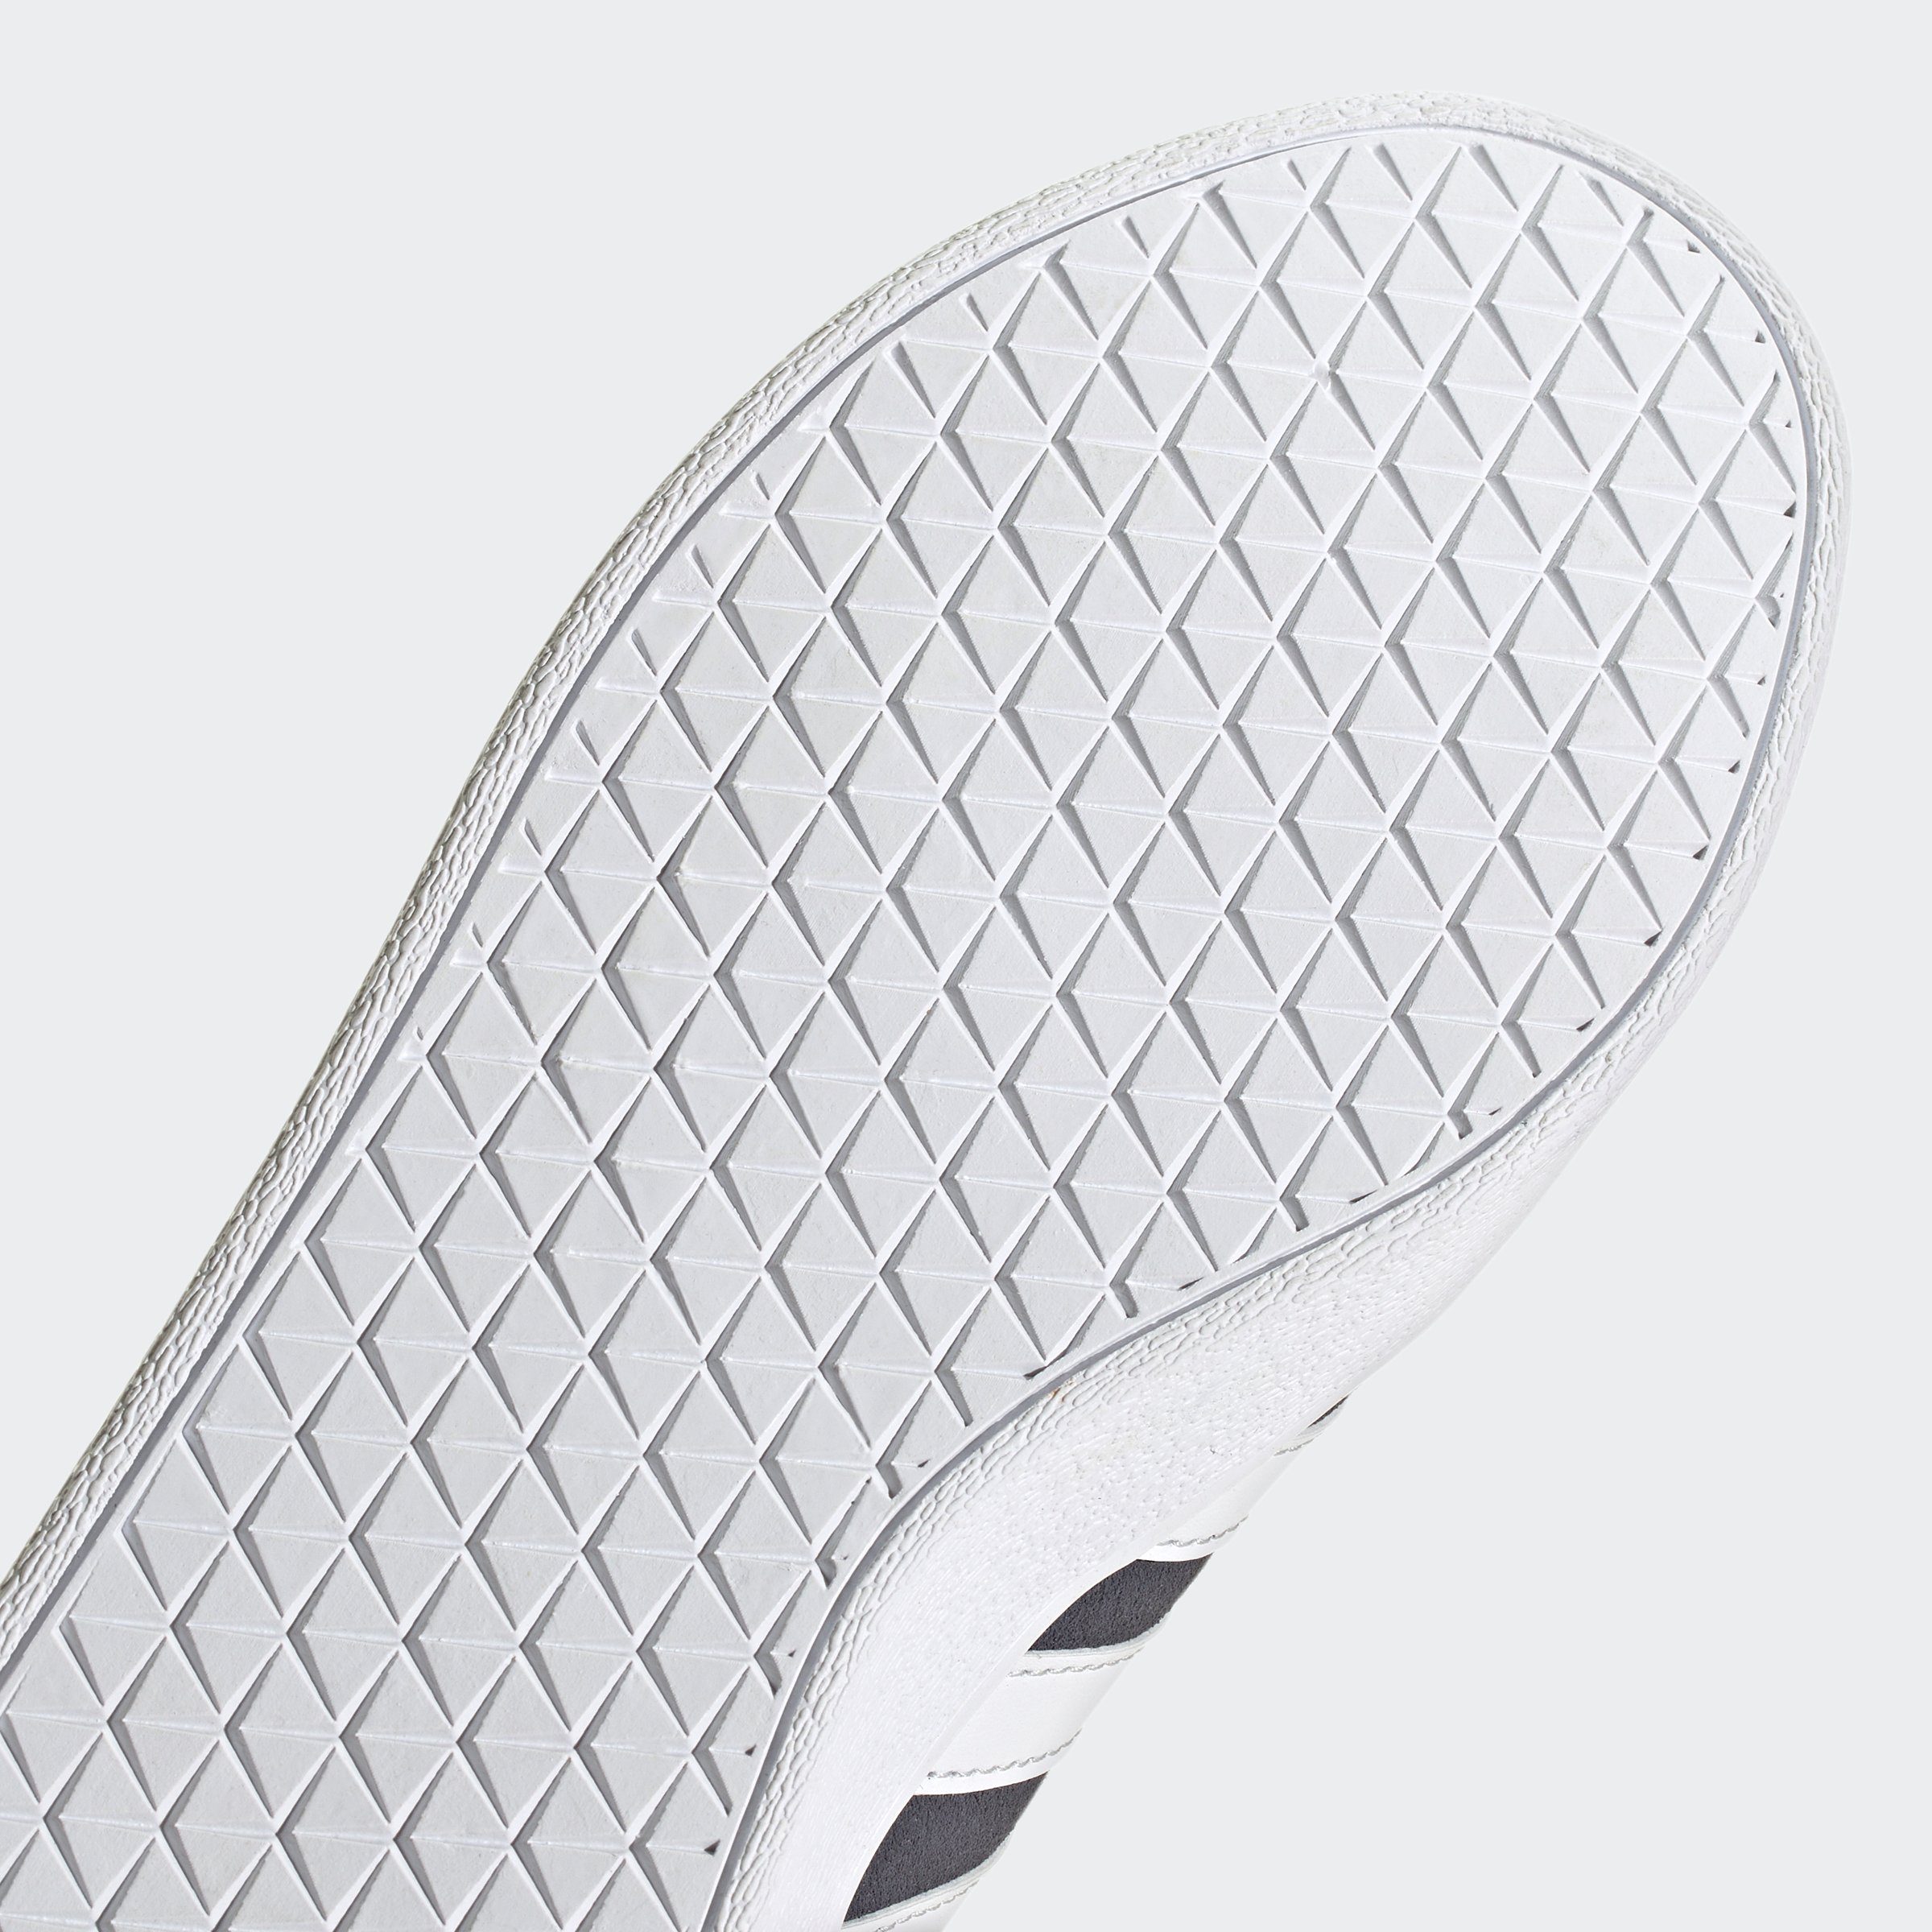 Samba auf / Shadow SUEDE Navy Sportswear adidas Core des COURT den 2.0 Cloud / Black Design Sneaker White VL adidas Spuren